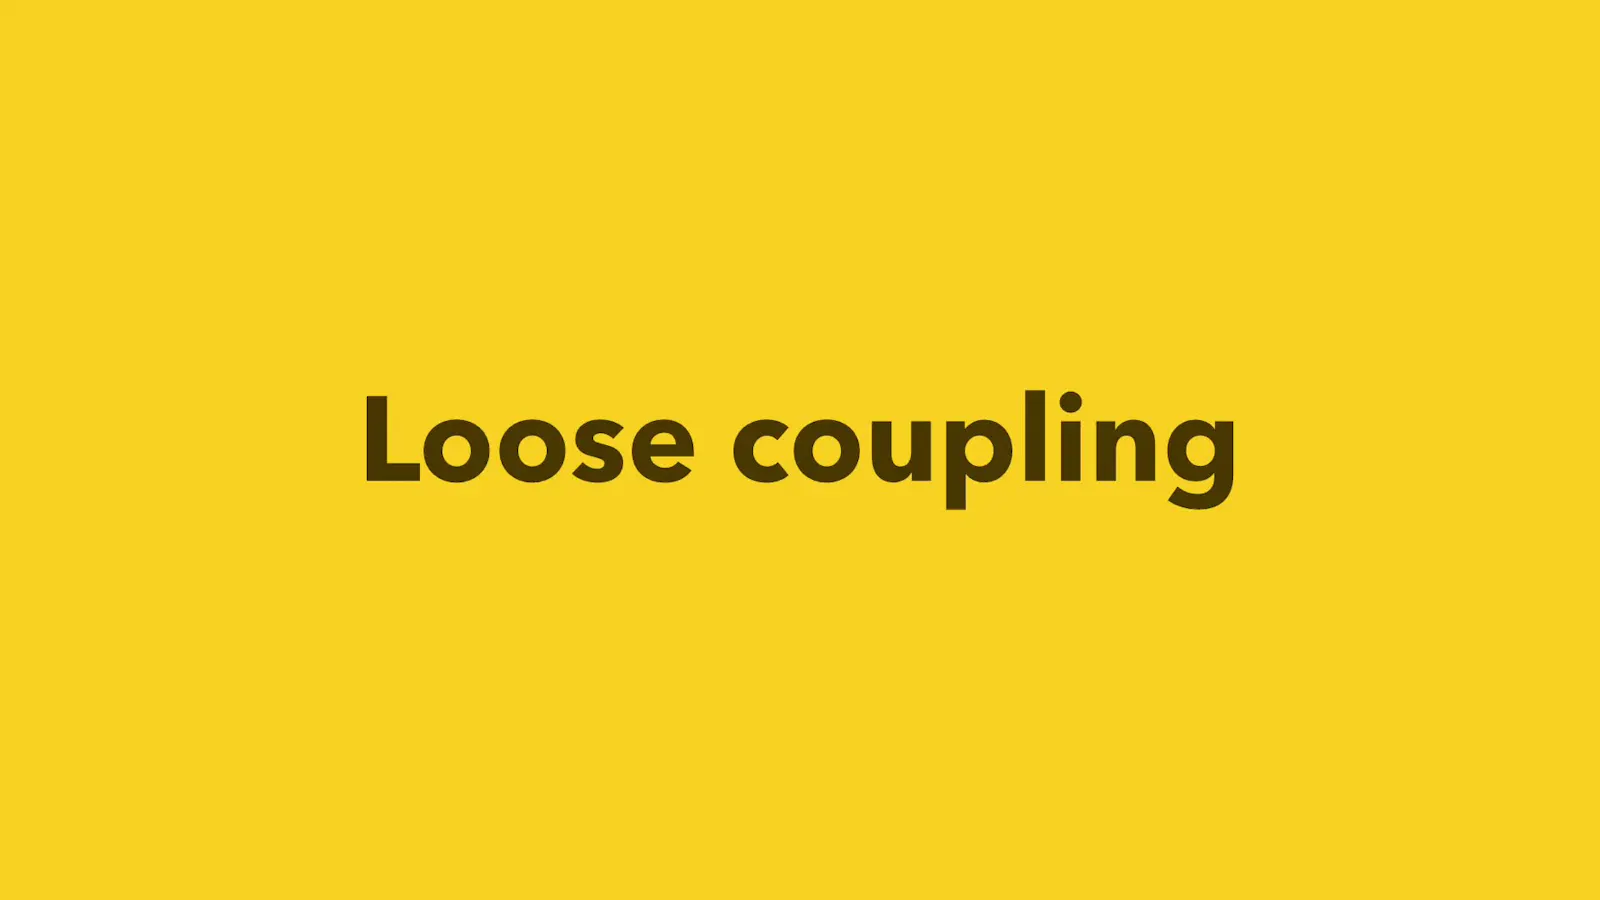 Loose coupling